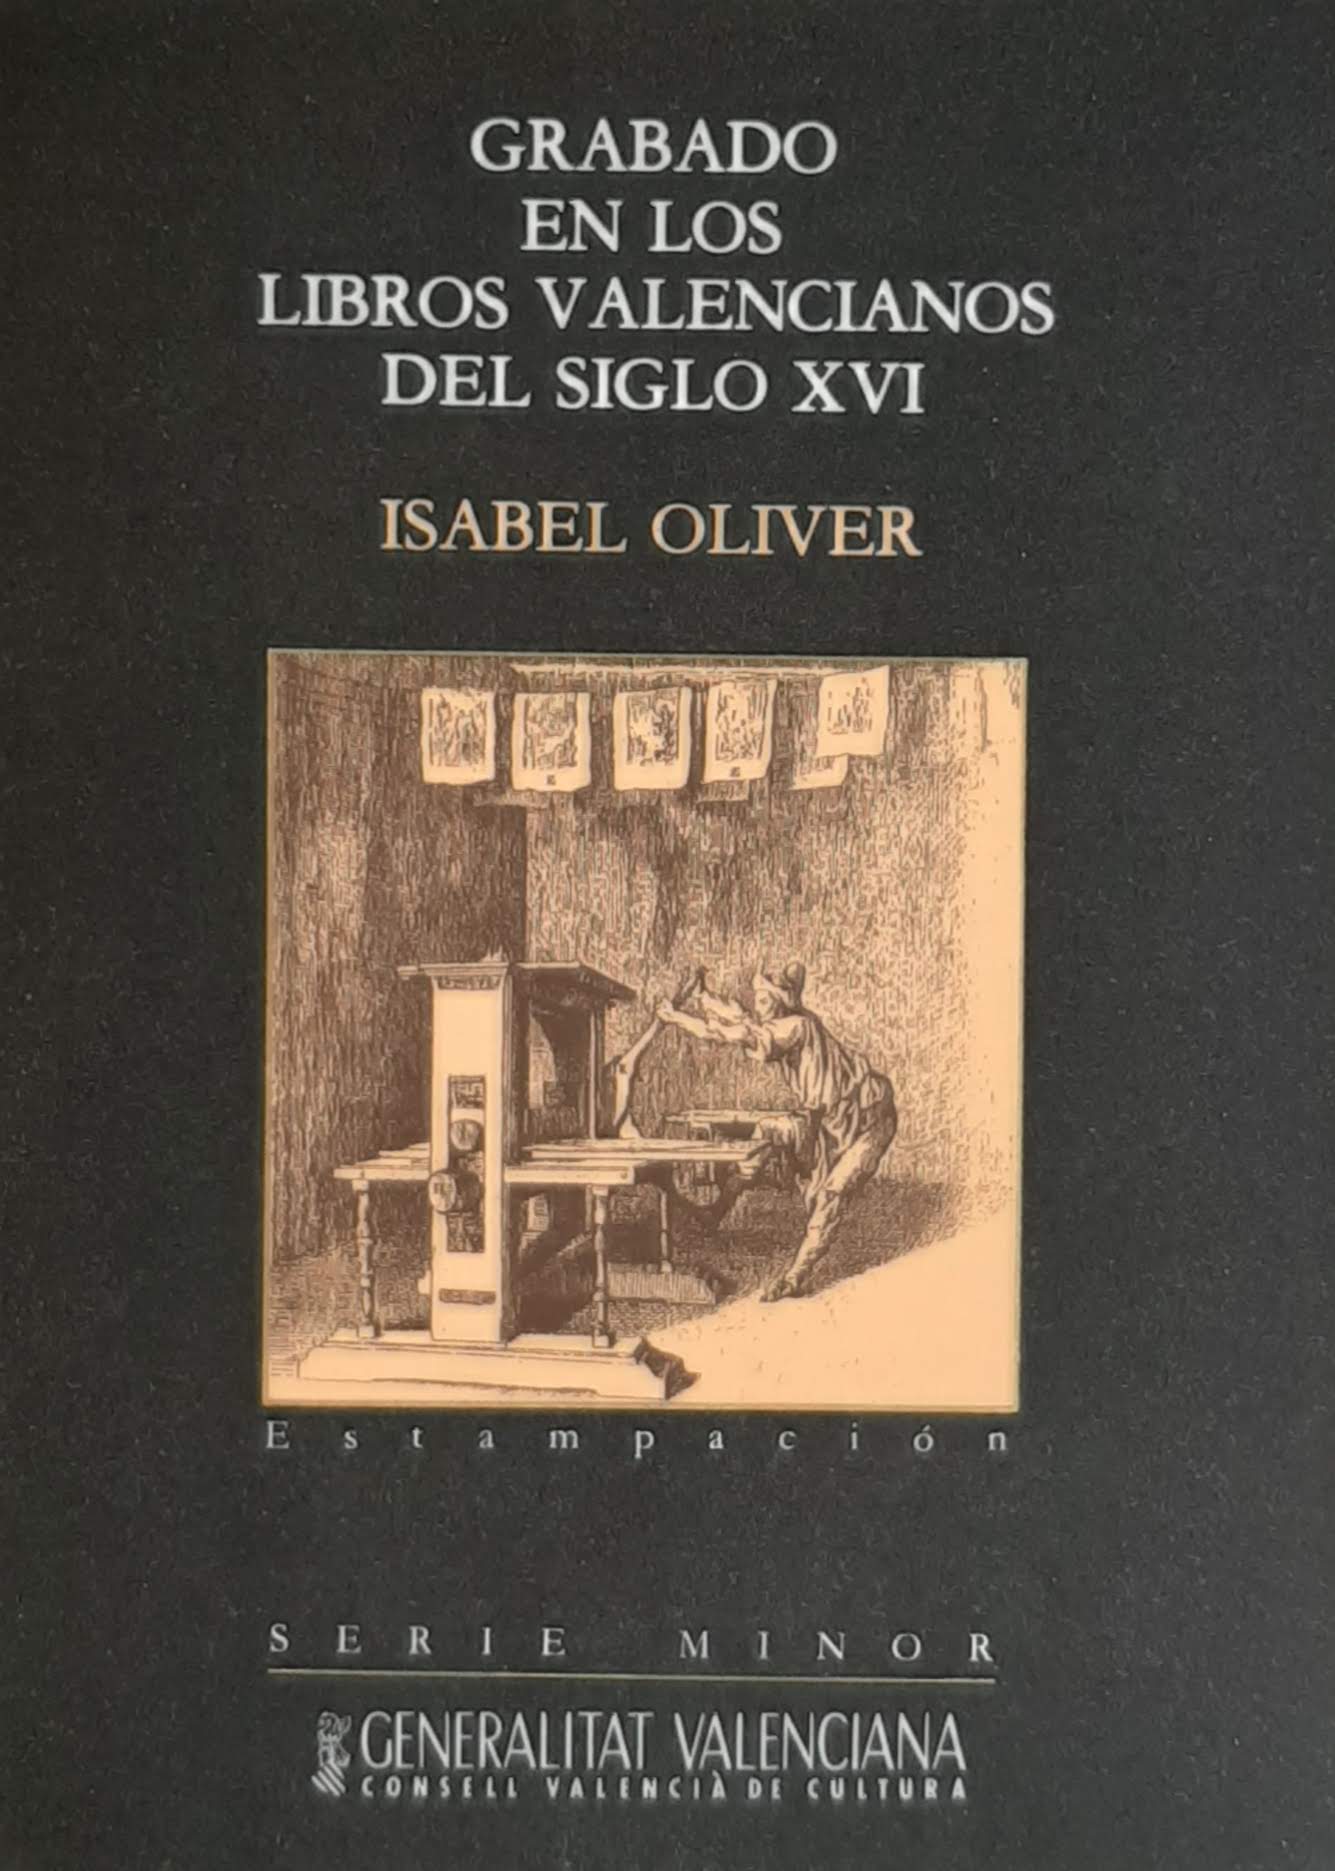 Grabado en los libros valencianos del siglo XVI. Nº 7. Serie Minor